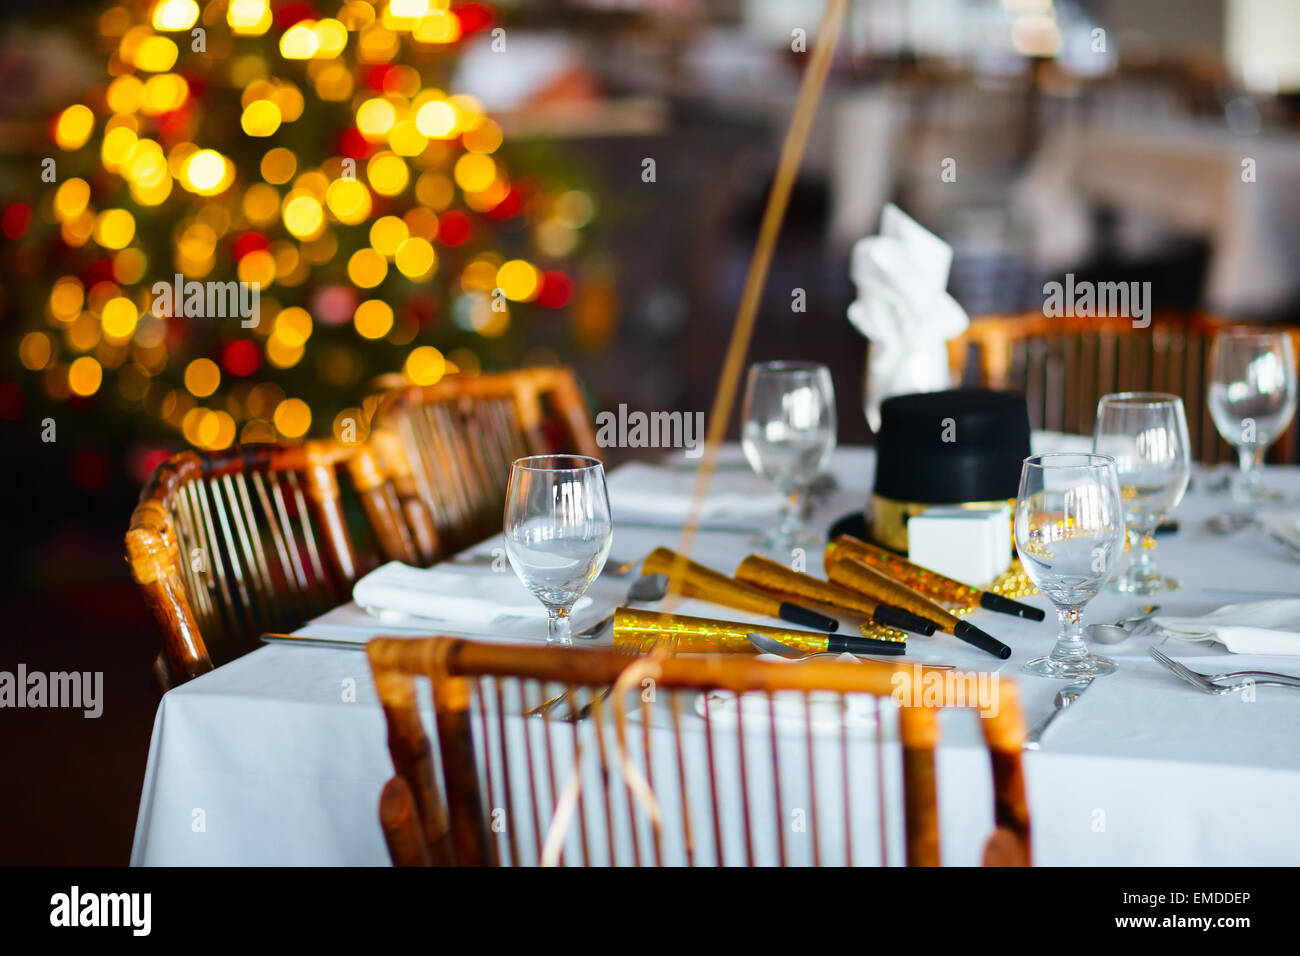 Réglage de la table de fête de Noël Banque D'Images